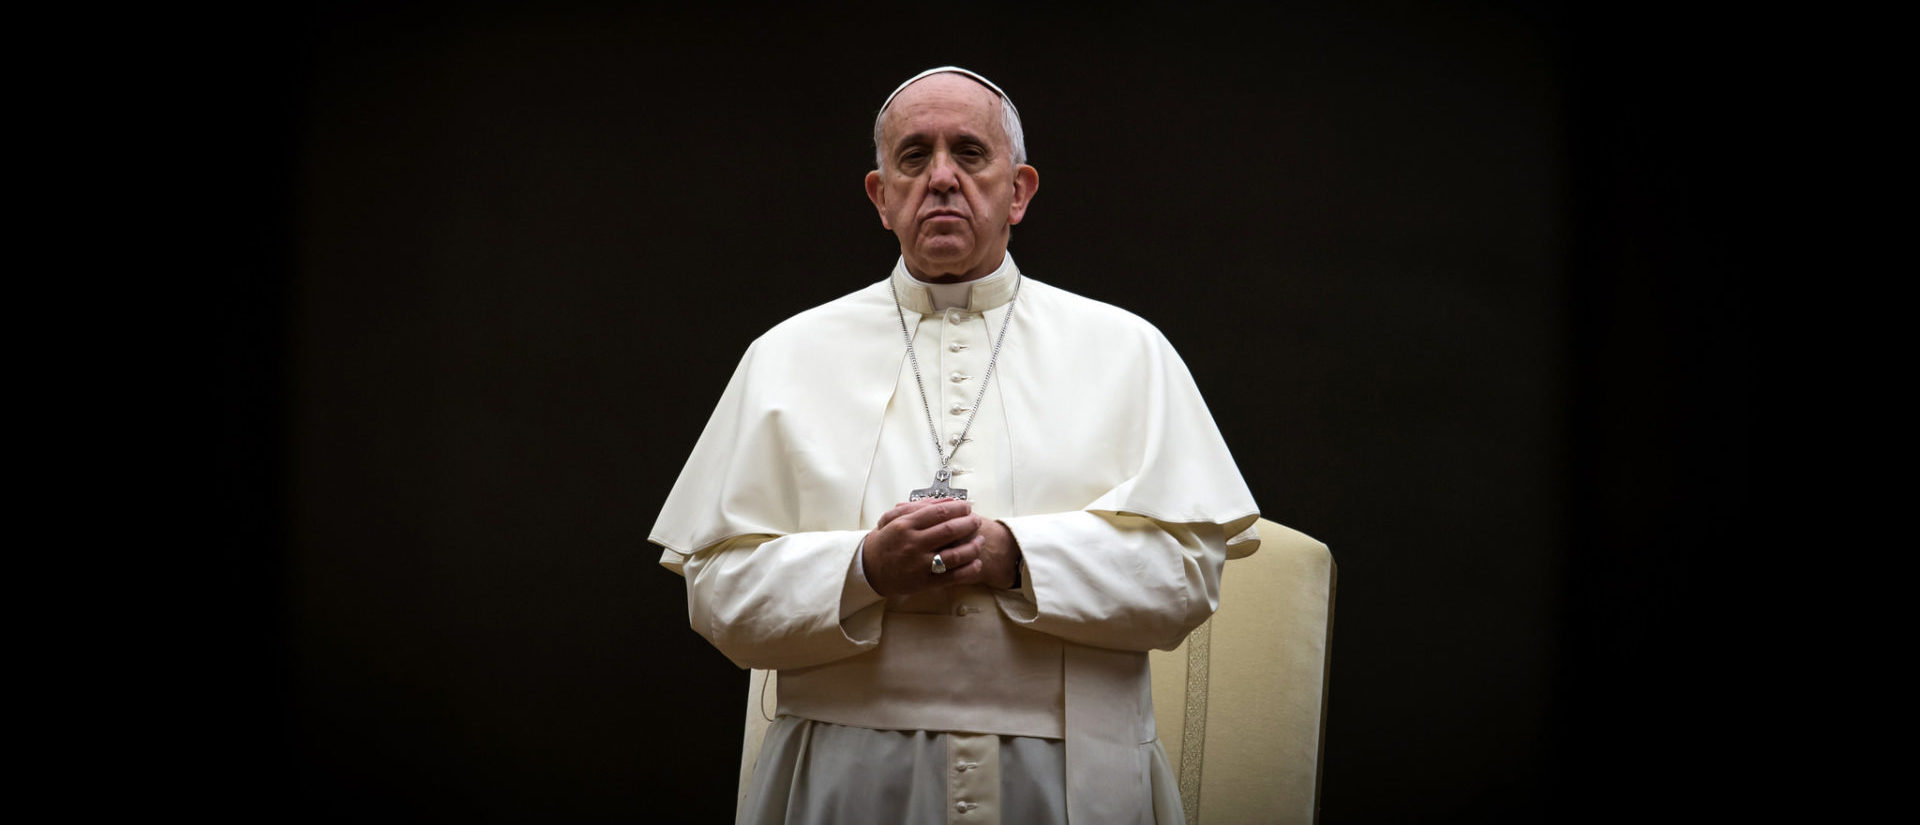 Le pape poursuit sa lutte anti-corruption  | © flickr/catholicism